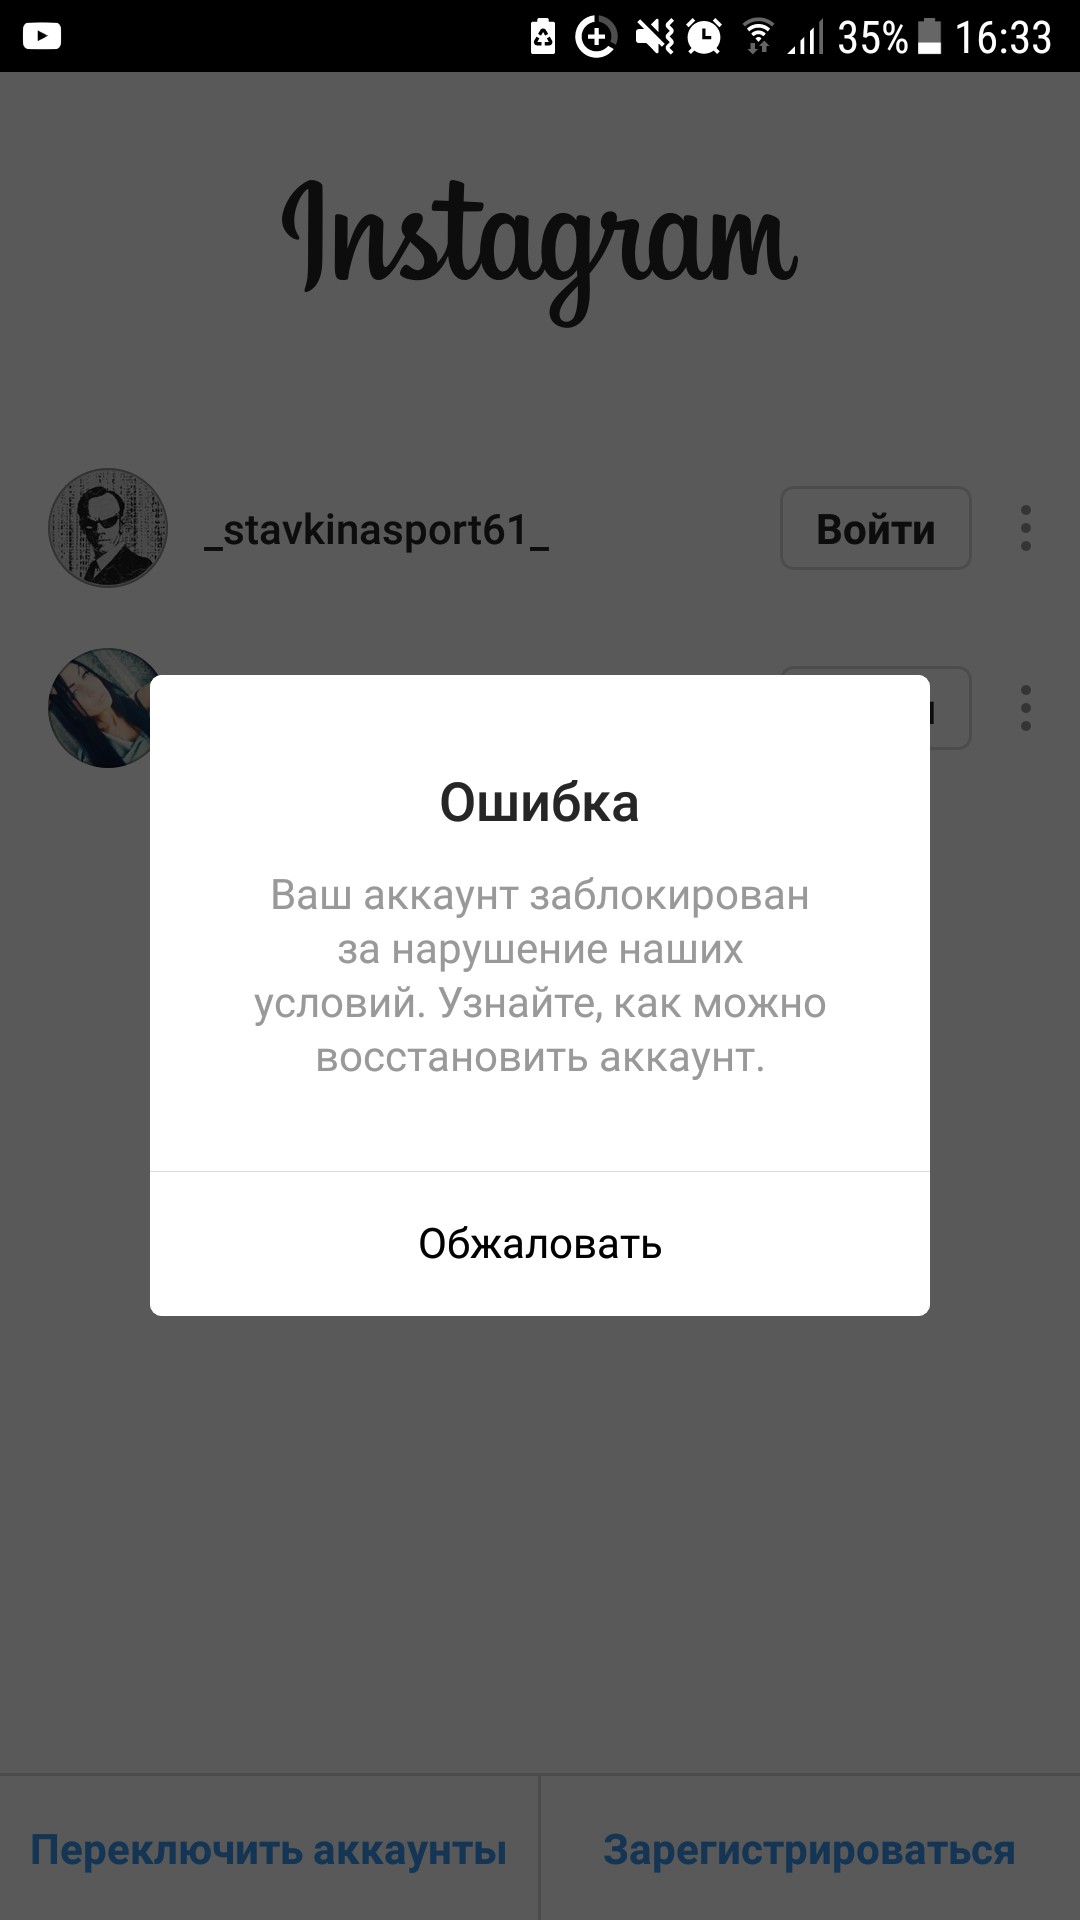 Как восстановить аккаунт в Instagram, если Вас взломали?, Timon, 26 фев 2019, 16:33, VQPGd9NzZxo.jpg